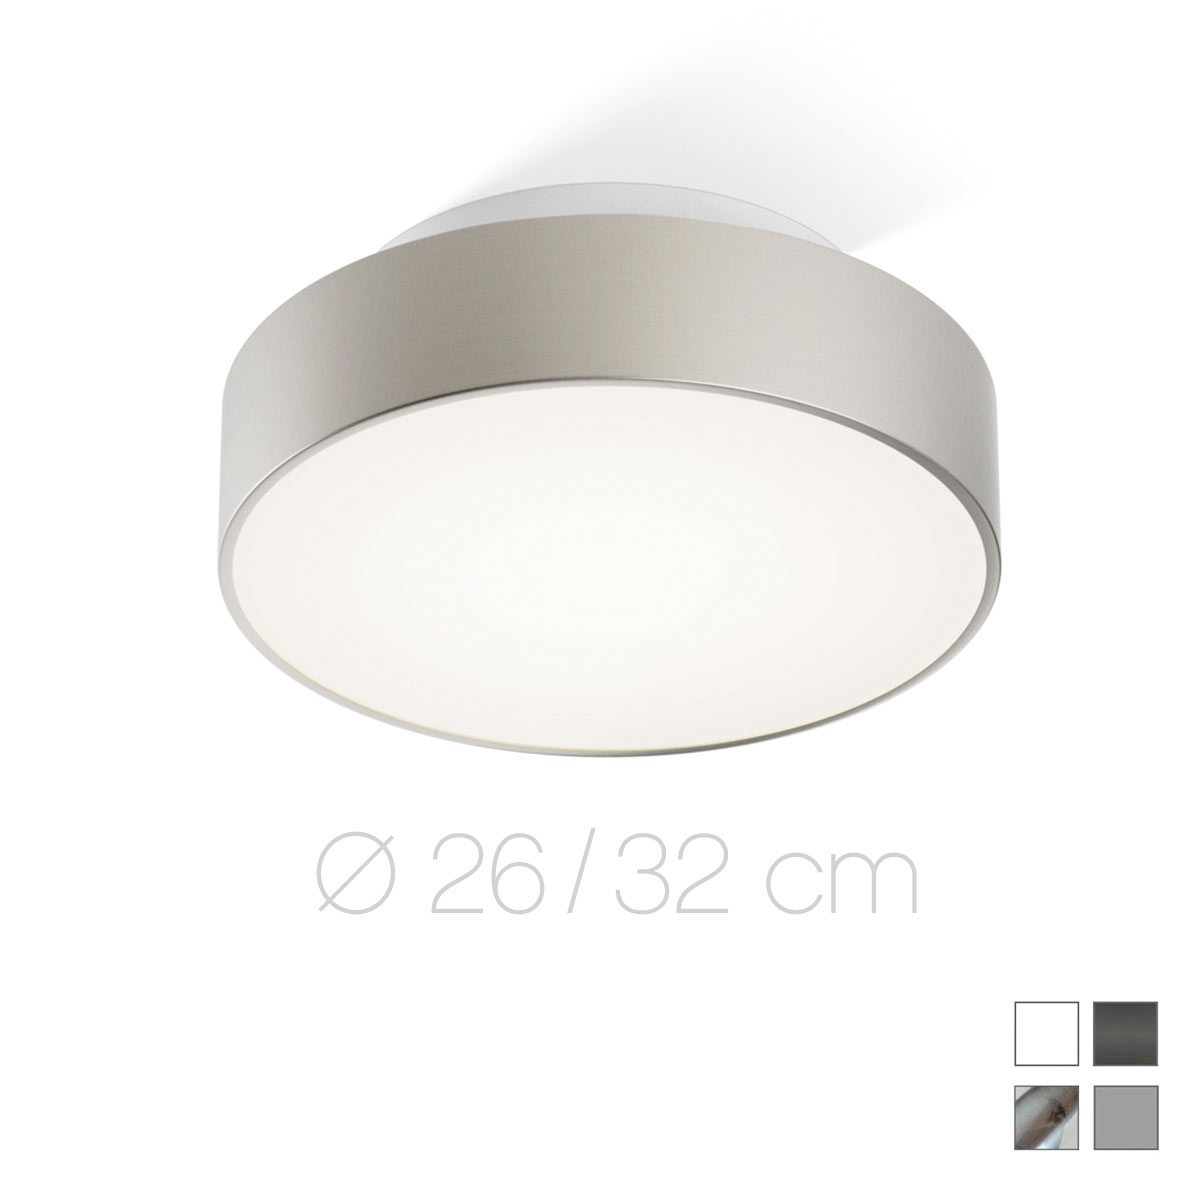 Puristische, kleine Bad-Deckenlampe JOIN LED, Durchmesser ab 26 cm